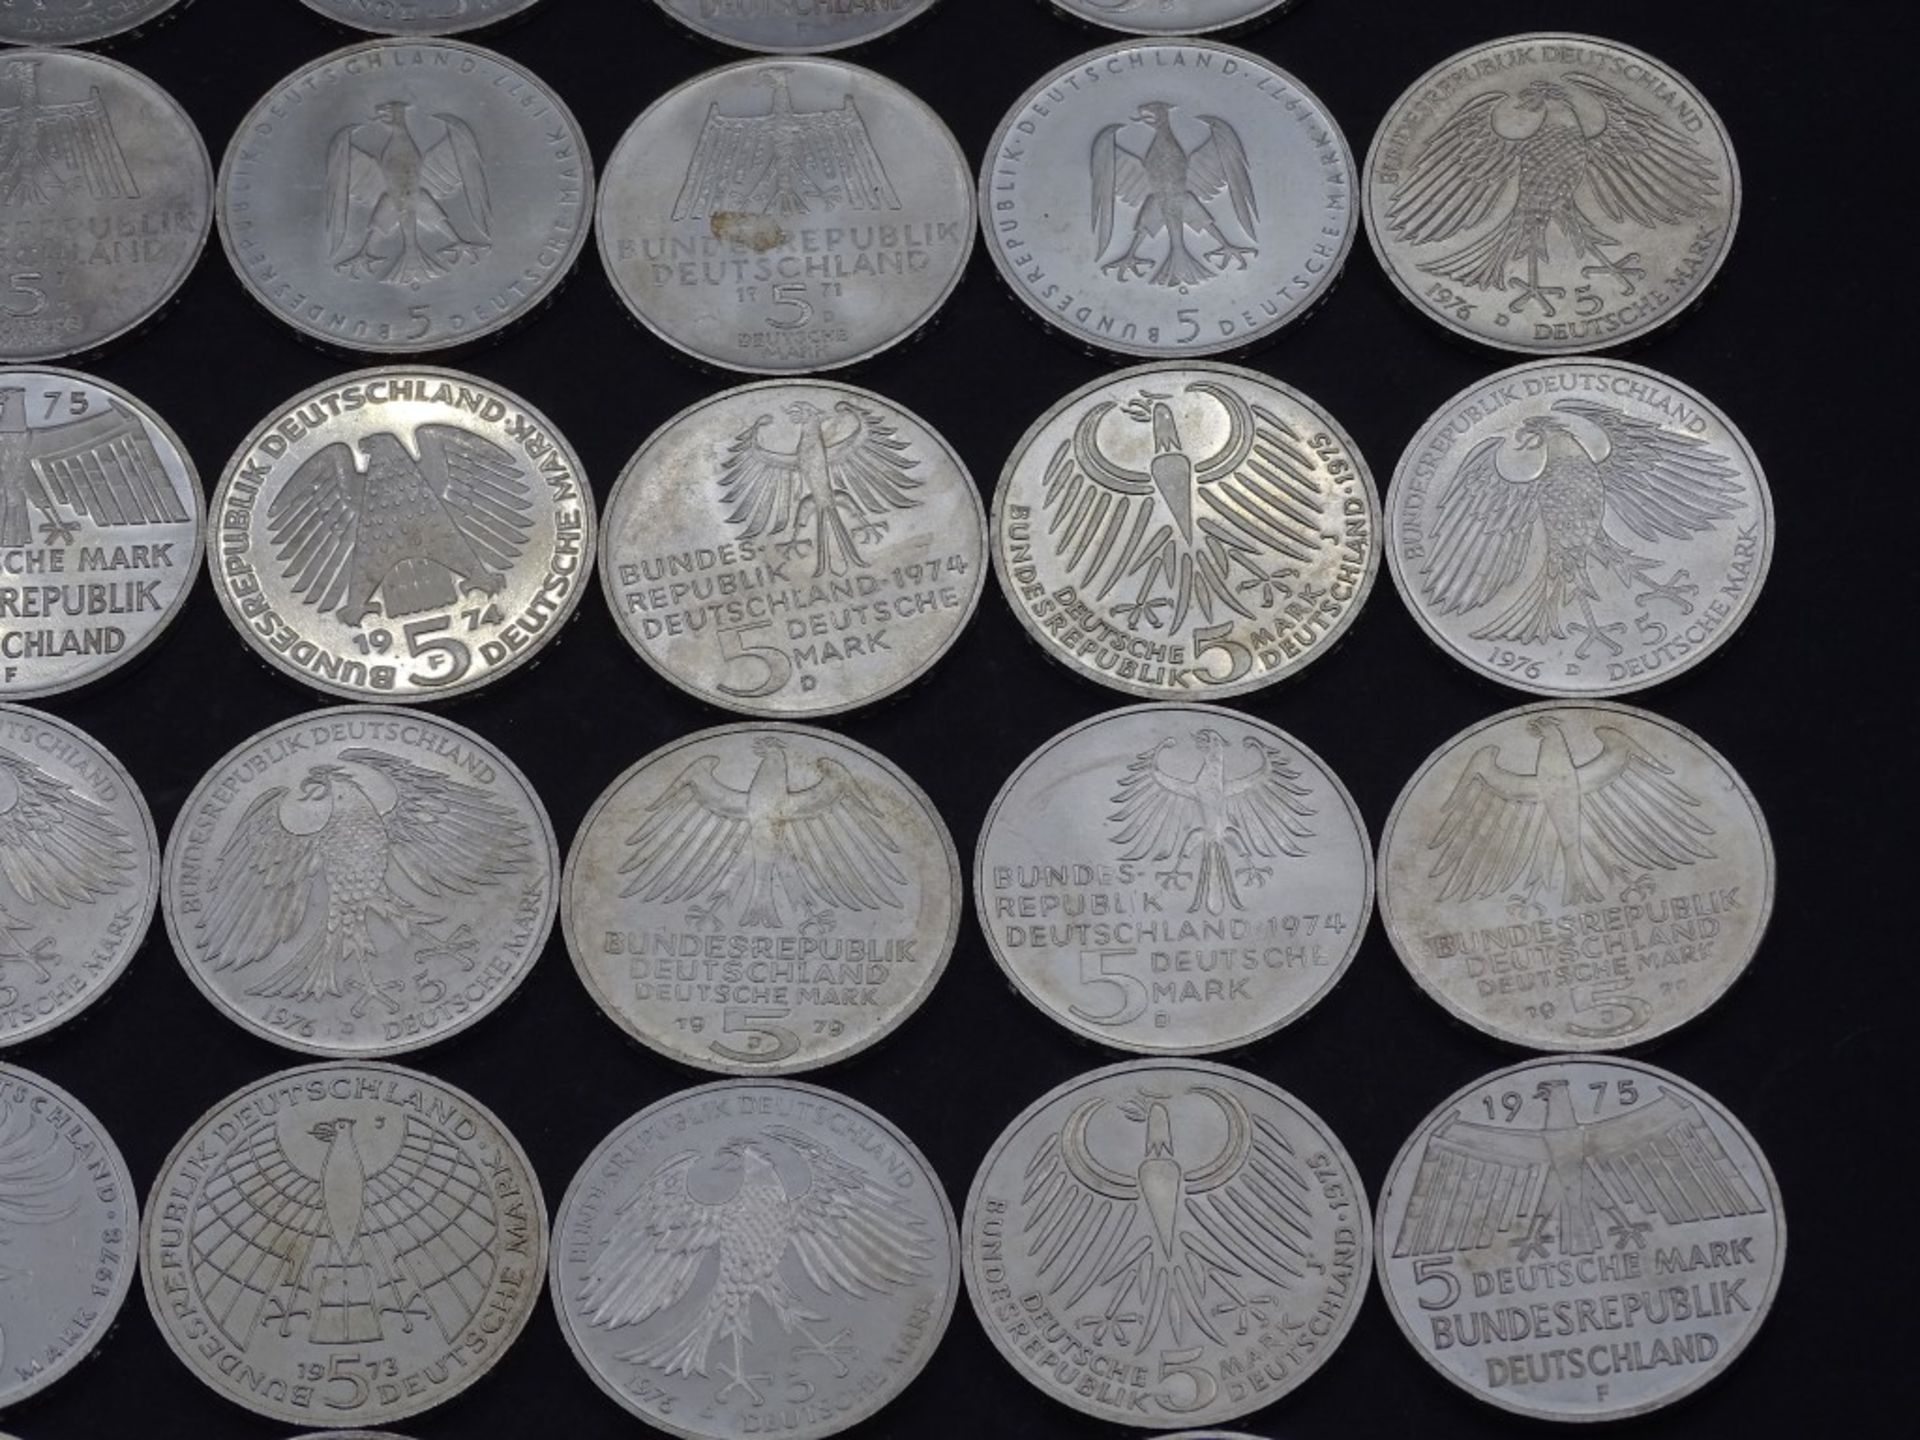 40x 5 DM Münzen,Silber,ges. 200 Deutsche Mar - Bild 6 aus 10